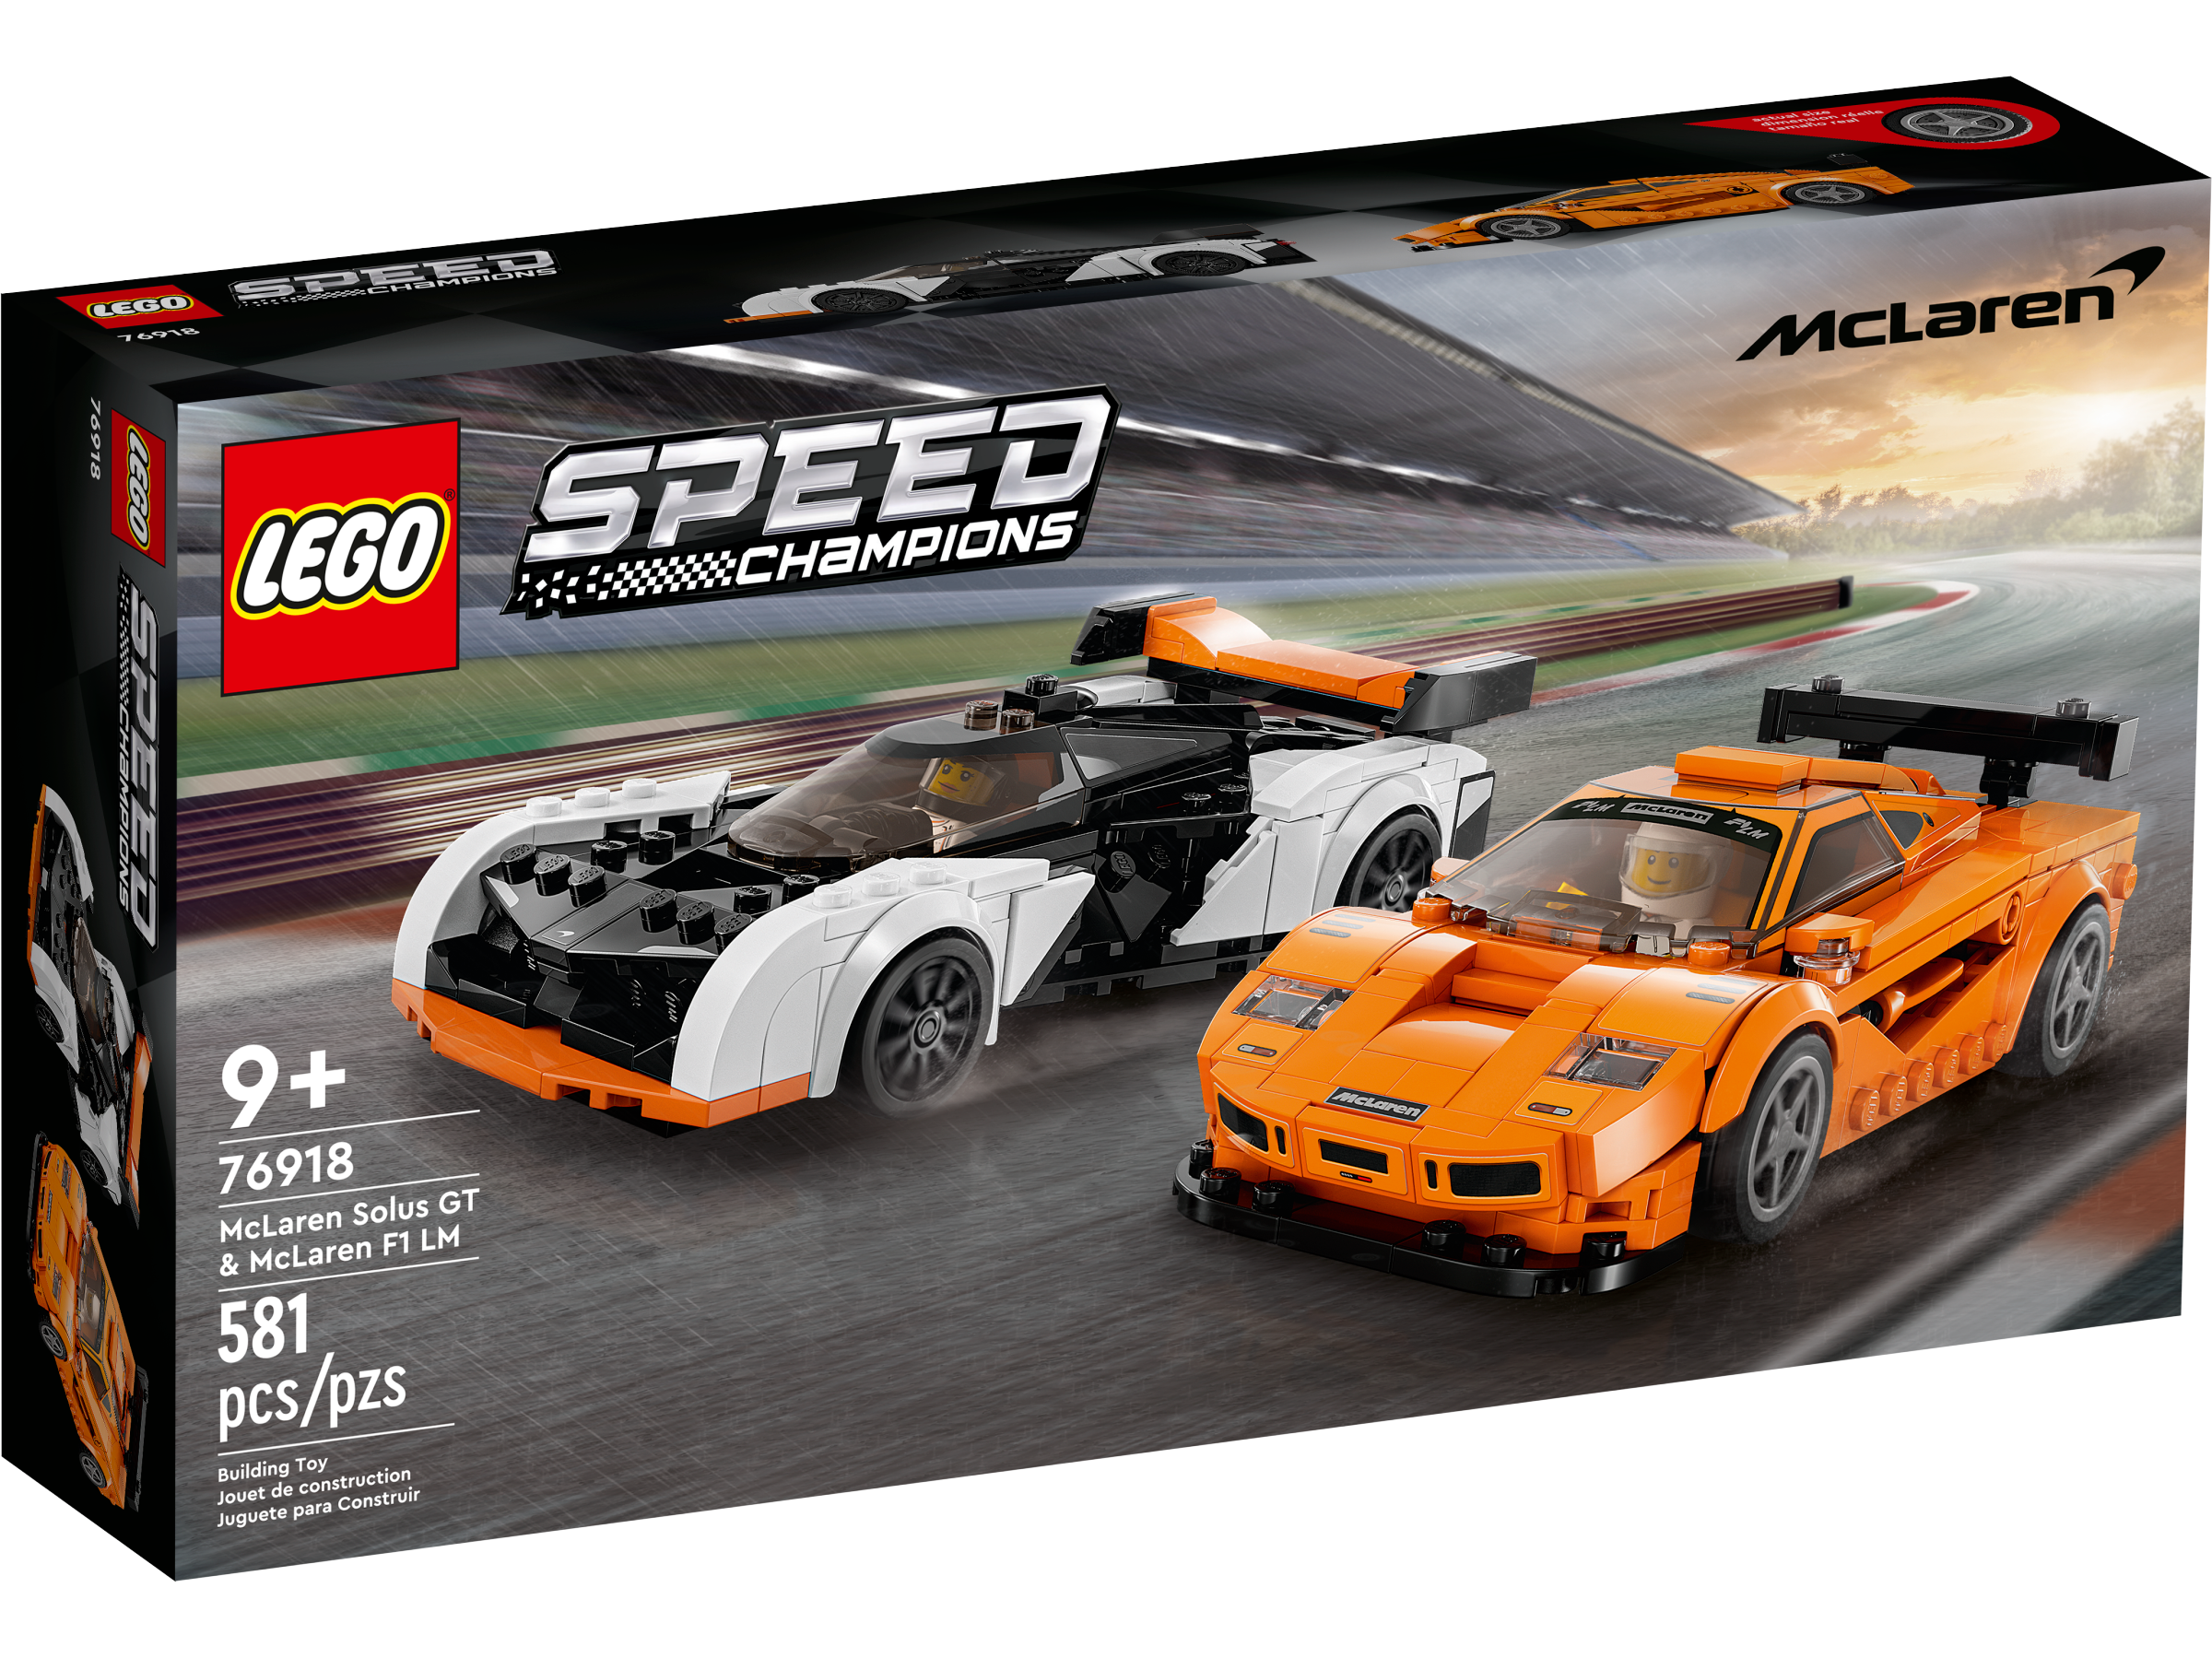 LEGO 76918 MC LAREN SOLUS GT & MCLAREN F1 LM SPEED CHAMPION